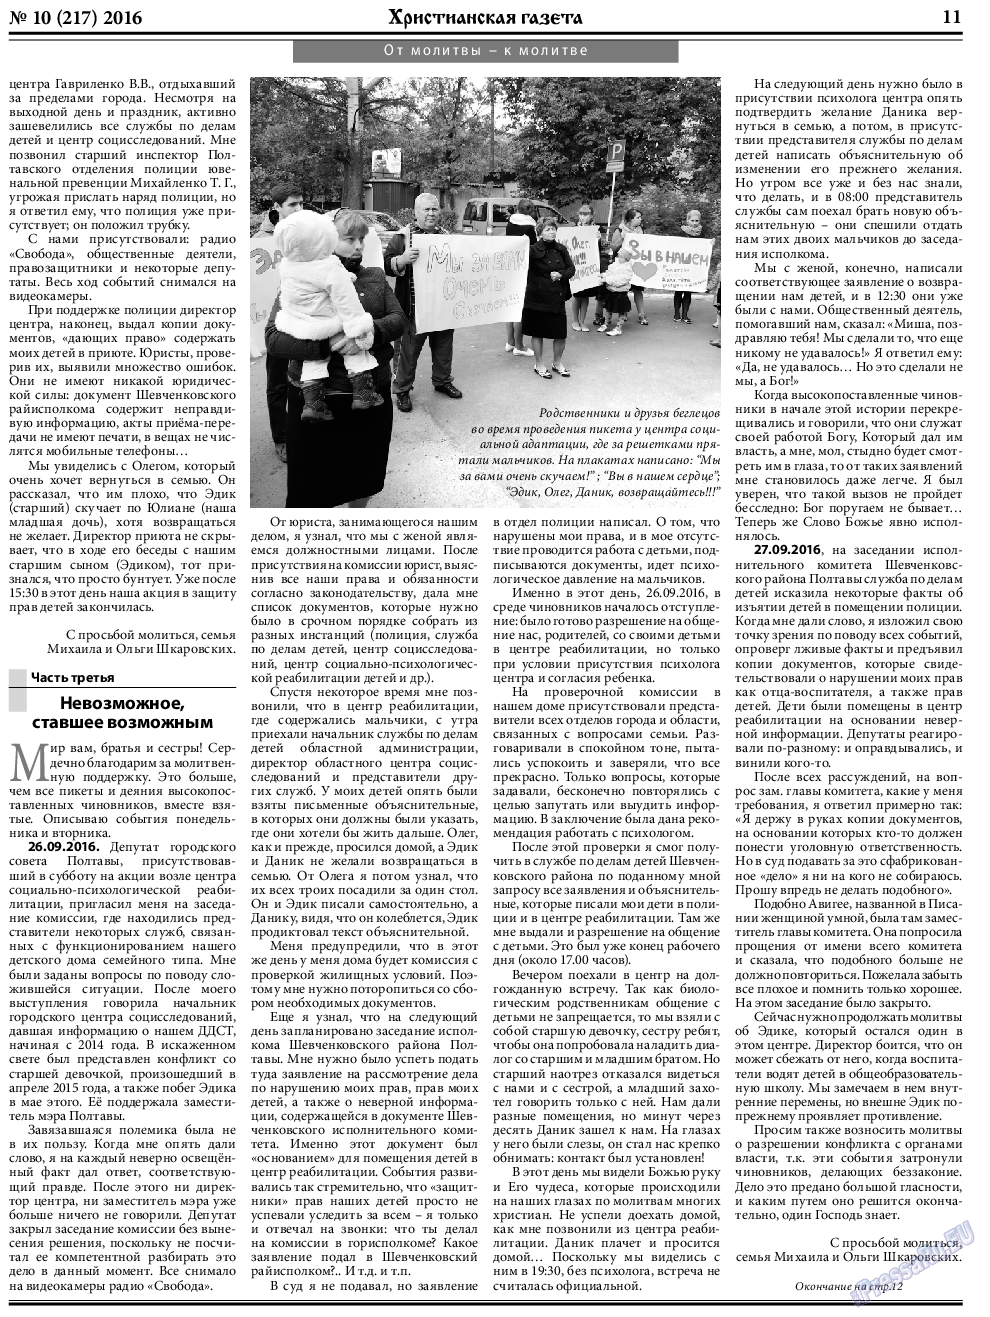 Христианская газета (газета). 2016 год, номер 10, стр. 11